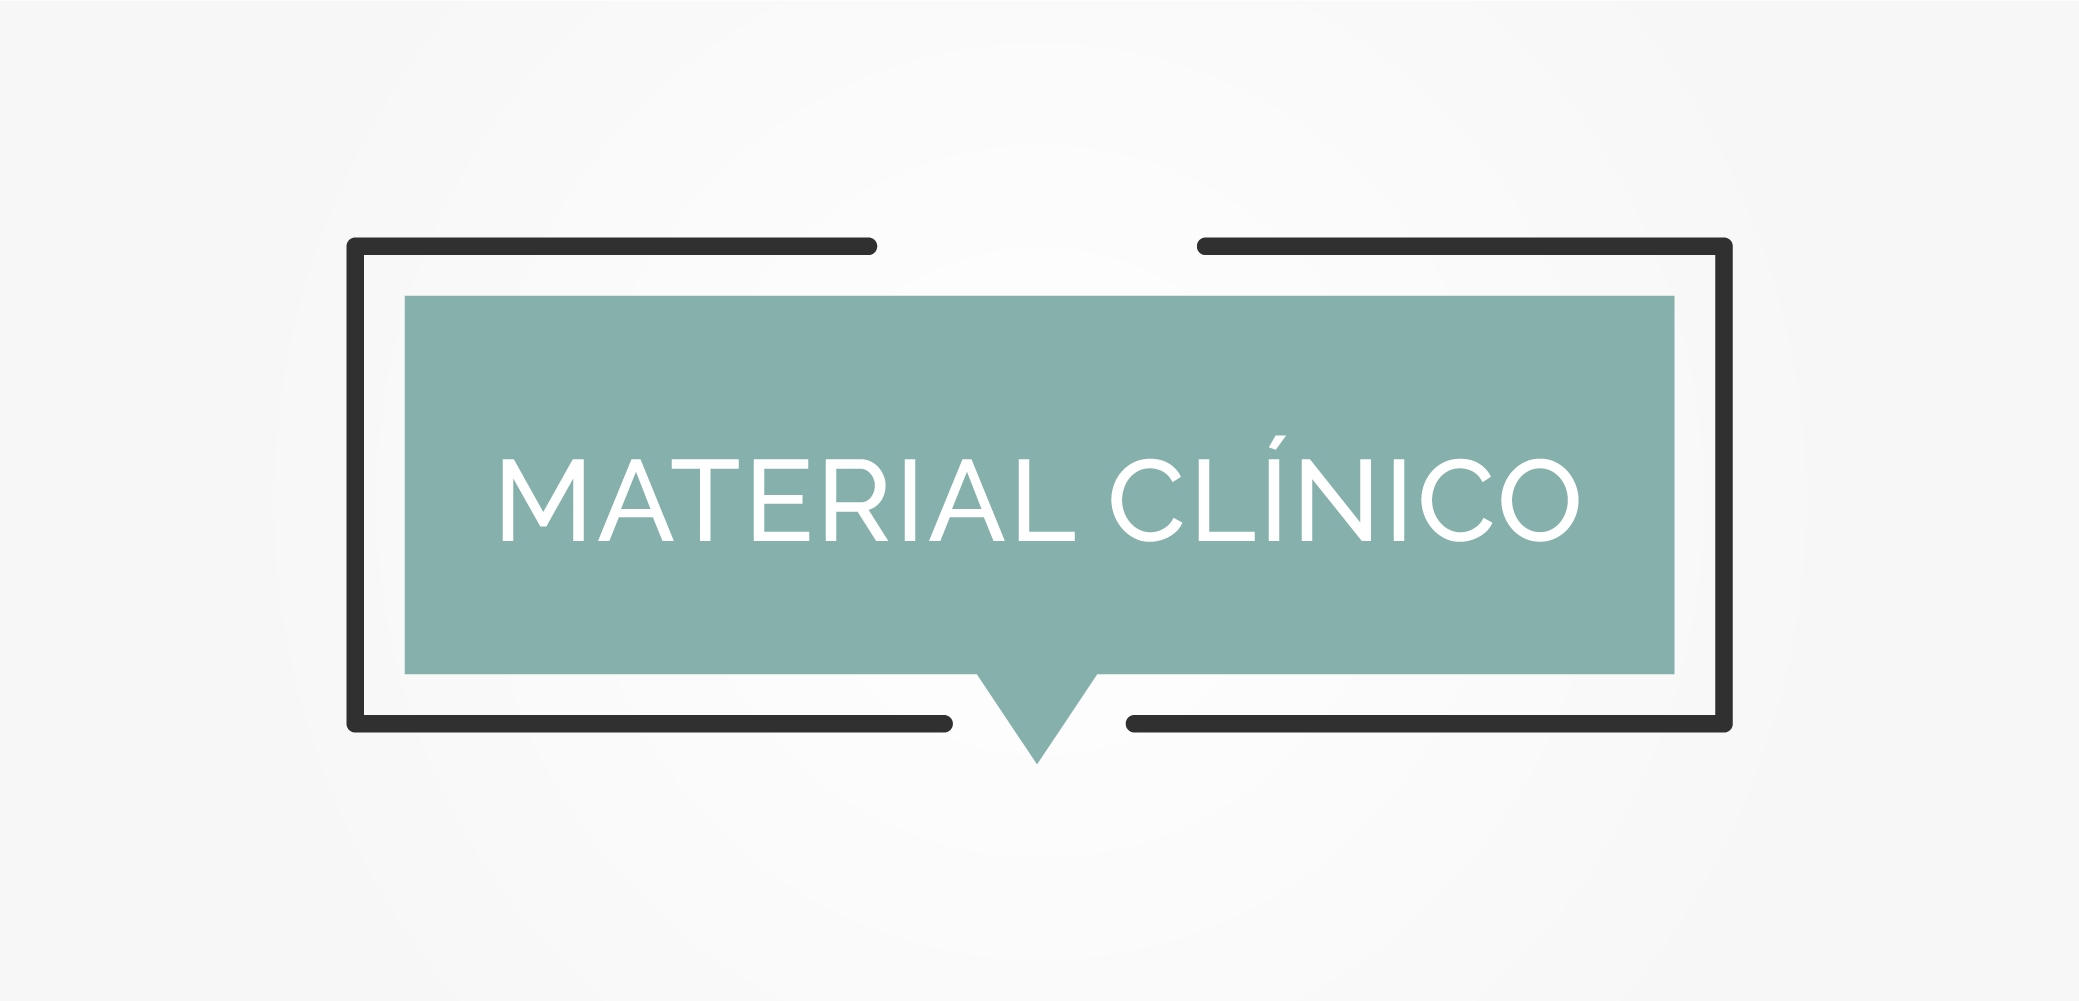 Material clínico